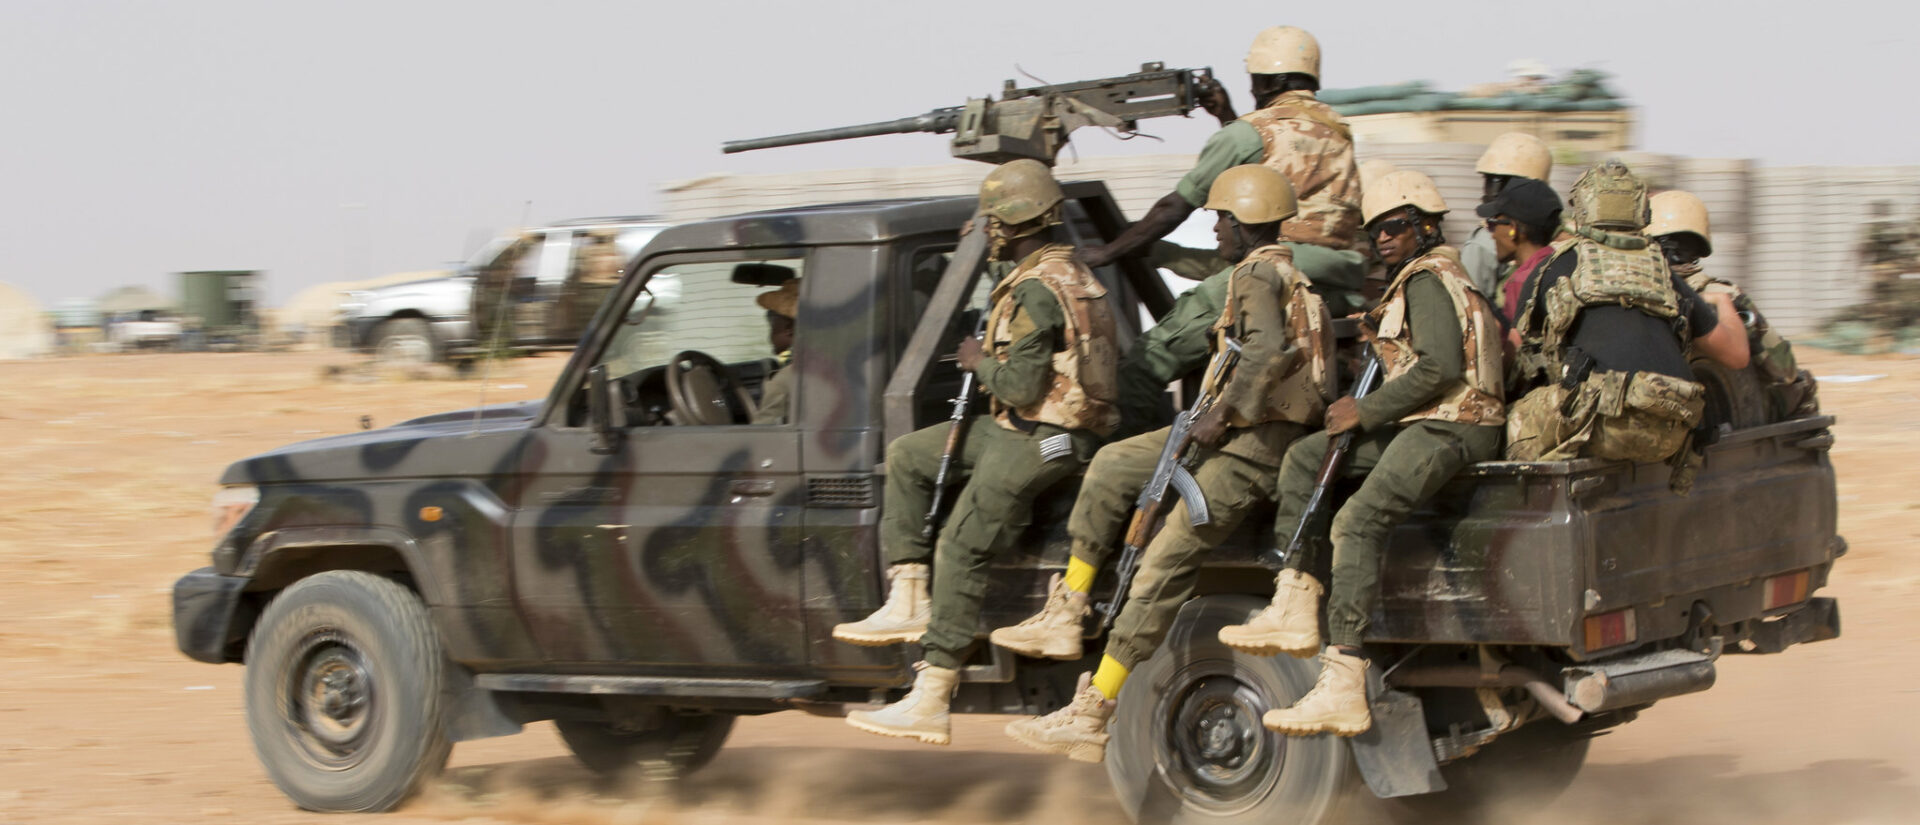 Les forces de sécurité du Burkina Faso sont sur le qui-vive face aux attaques répétées des djihadistes | photo d'illustration © USAFRICOM/Flickr/CC BY 2.0